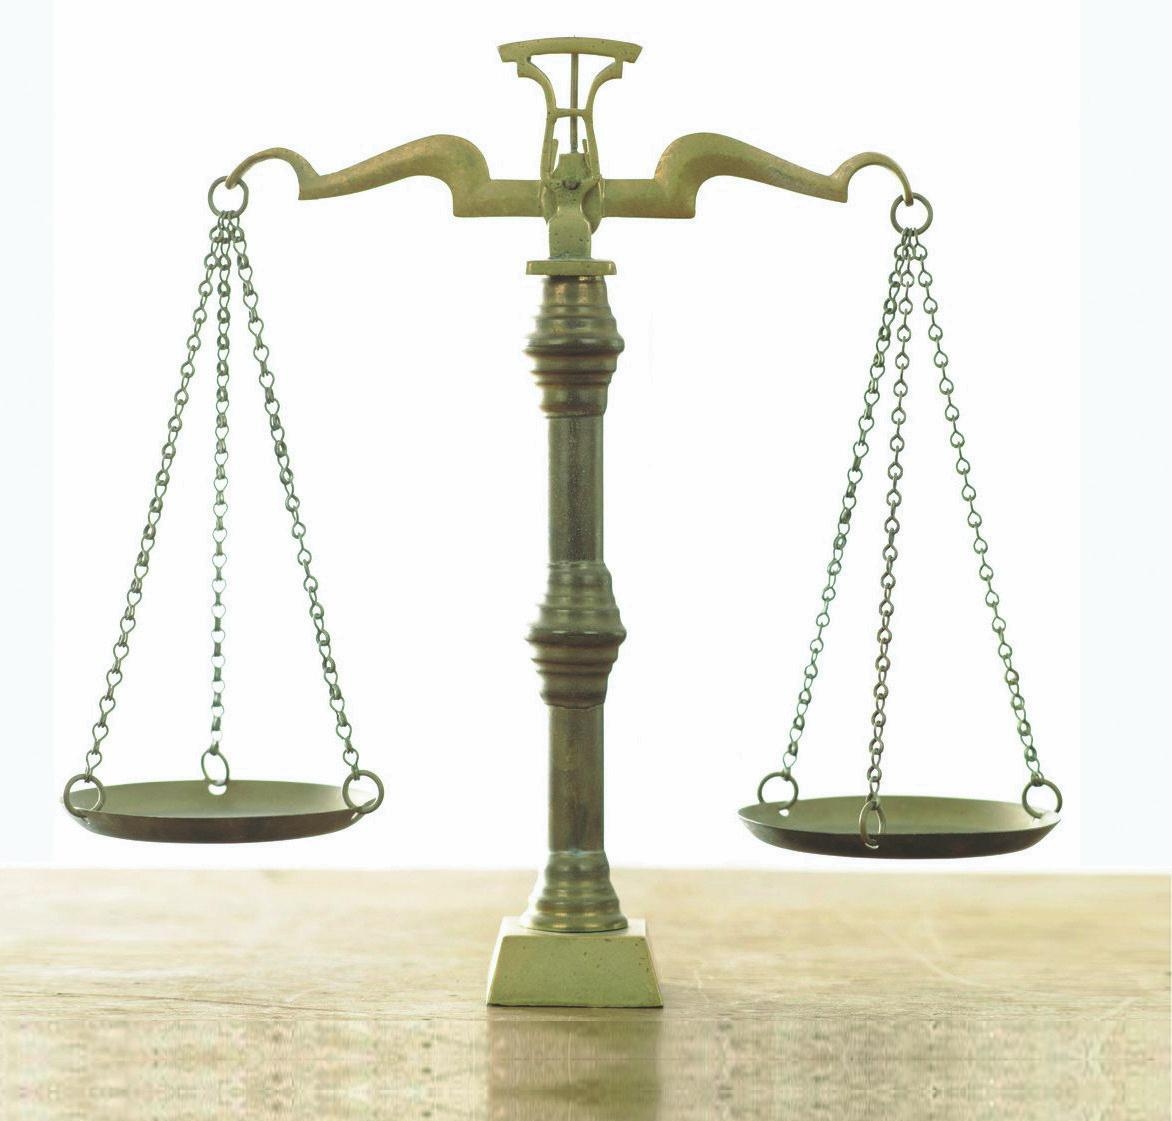 Весы Фемиды, как символ справедливости верховного суда